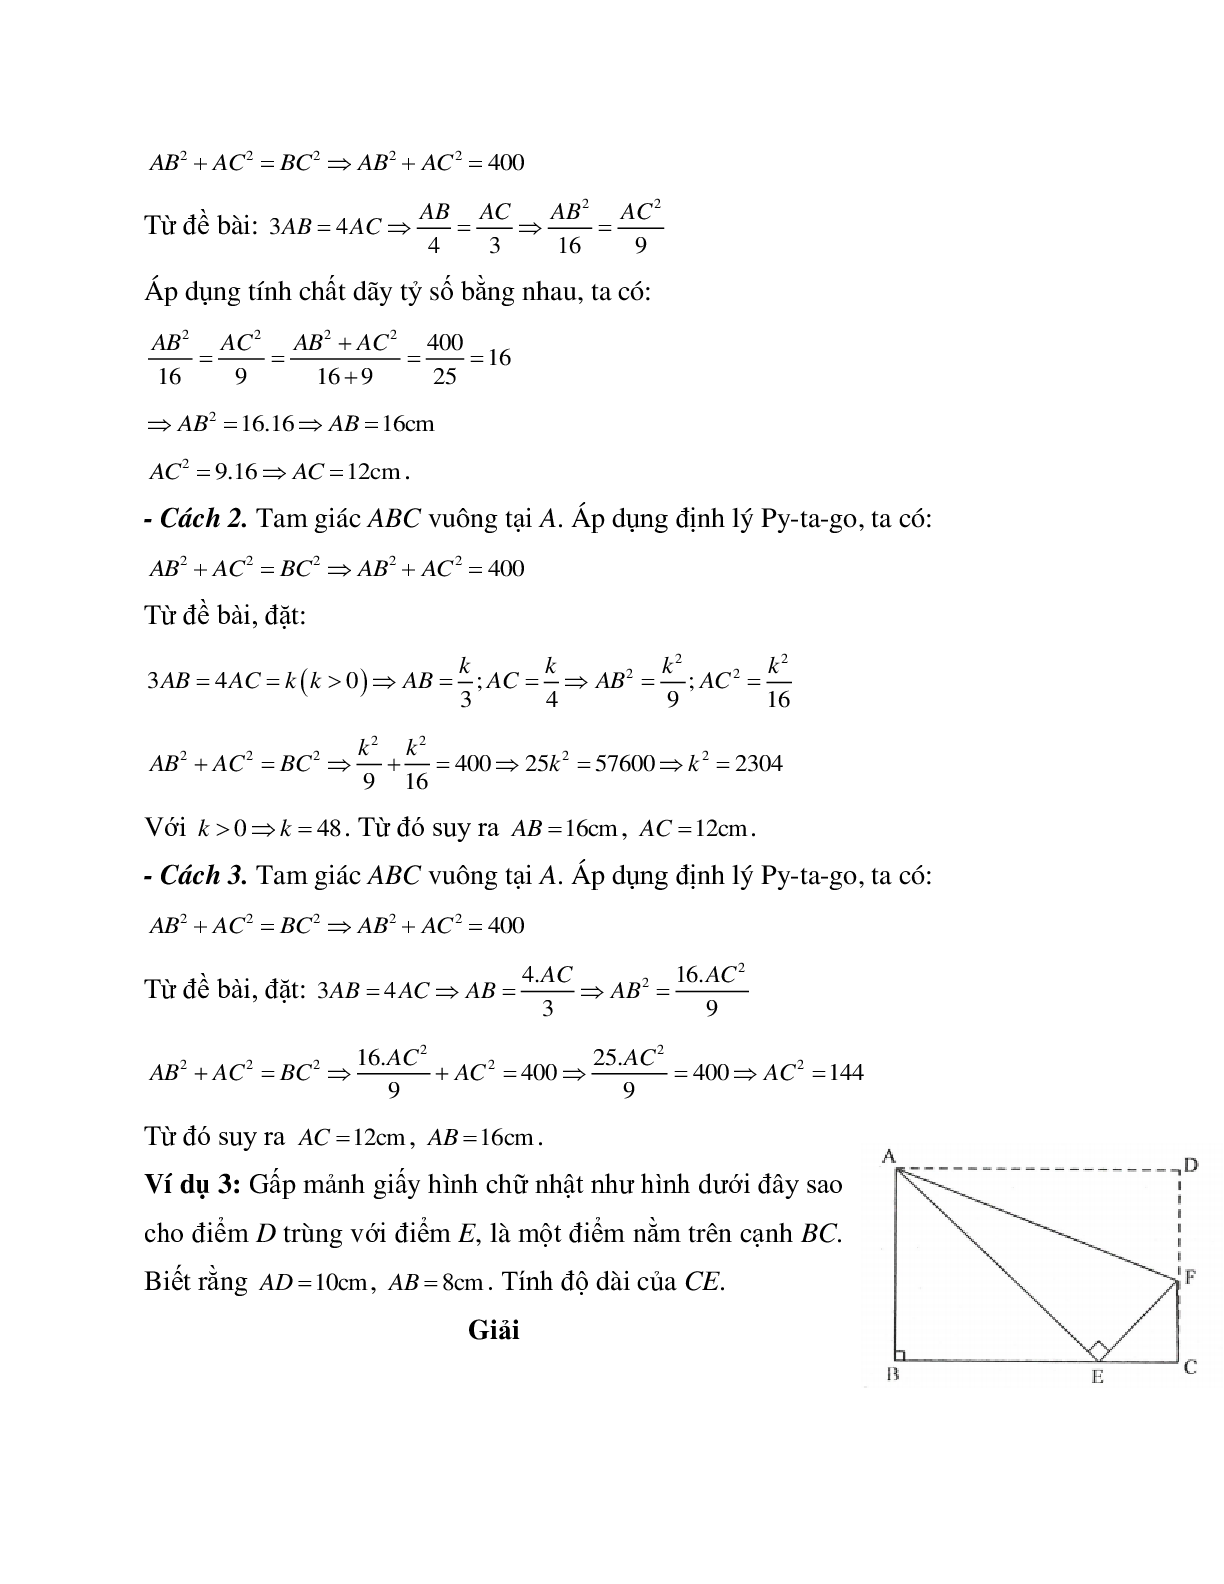 Những bài tập điển hình về Định lý Pi-ta-go trong tam giác vuông có lời giải (trang 3)